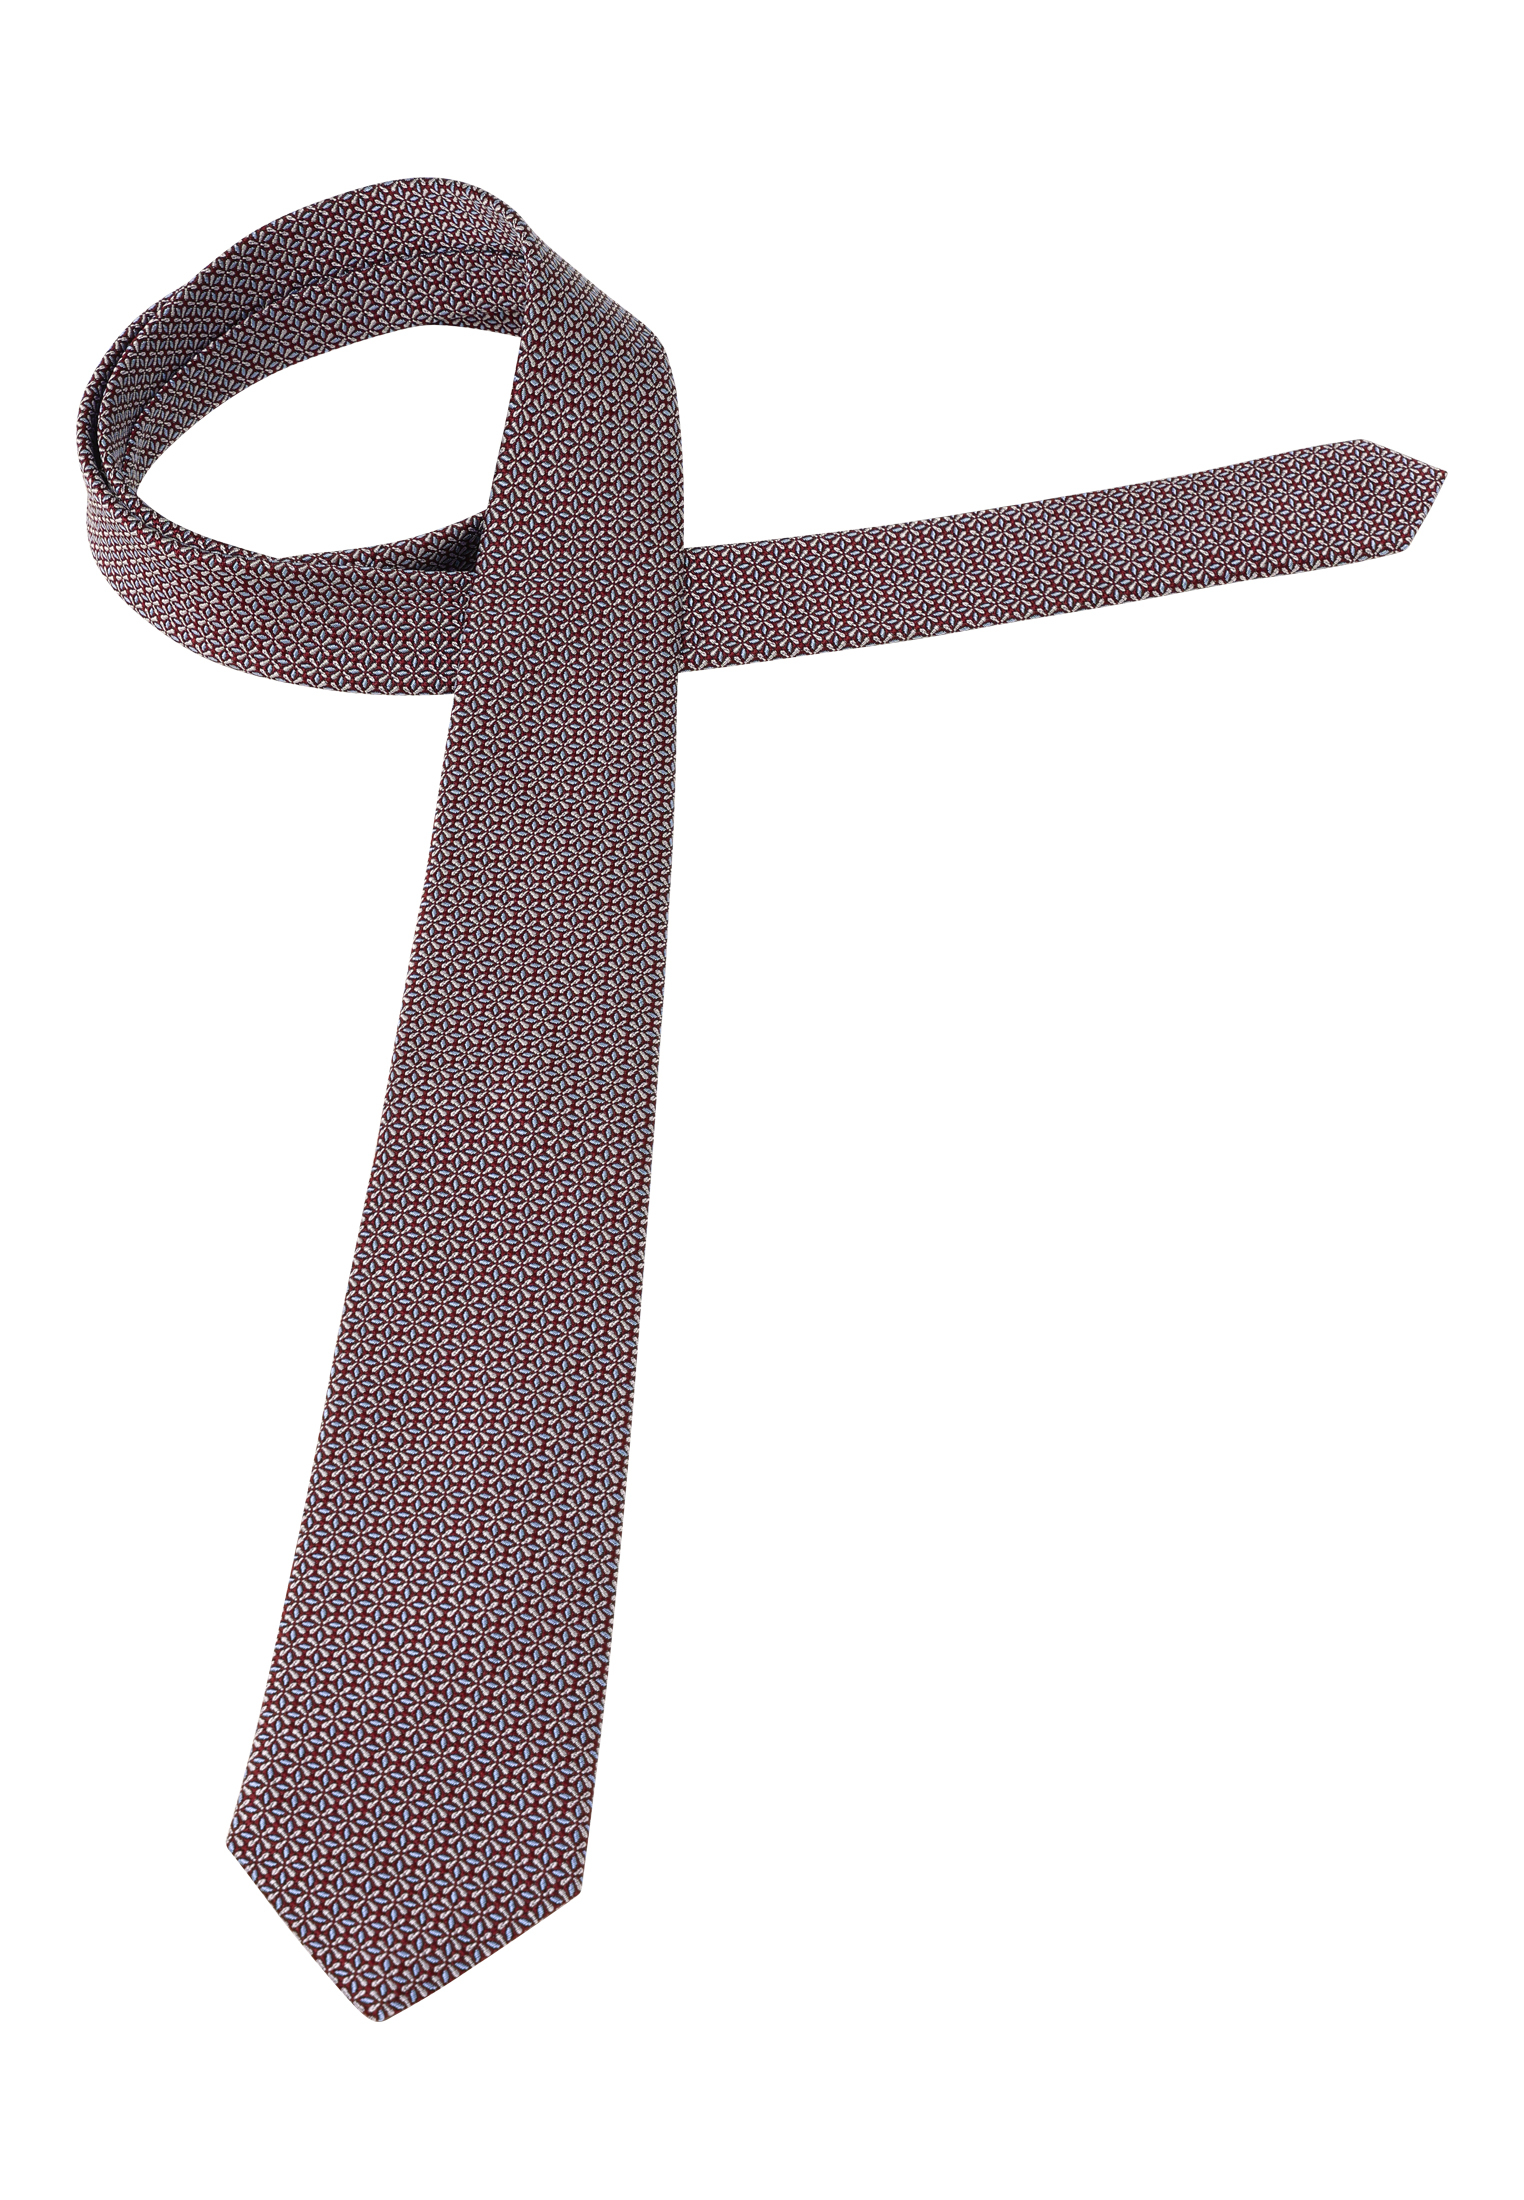 Krawatte in braun strukturiert | braun | 142 | 1AC02043-02-91-142